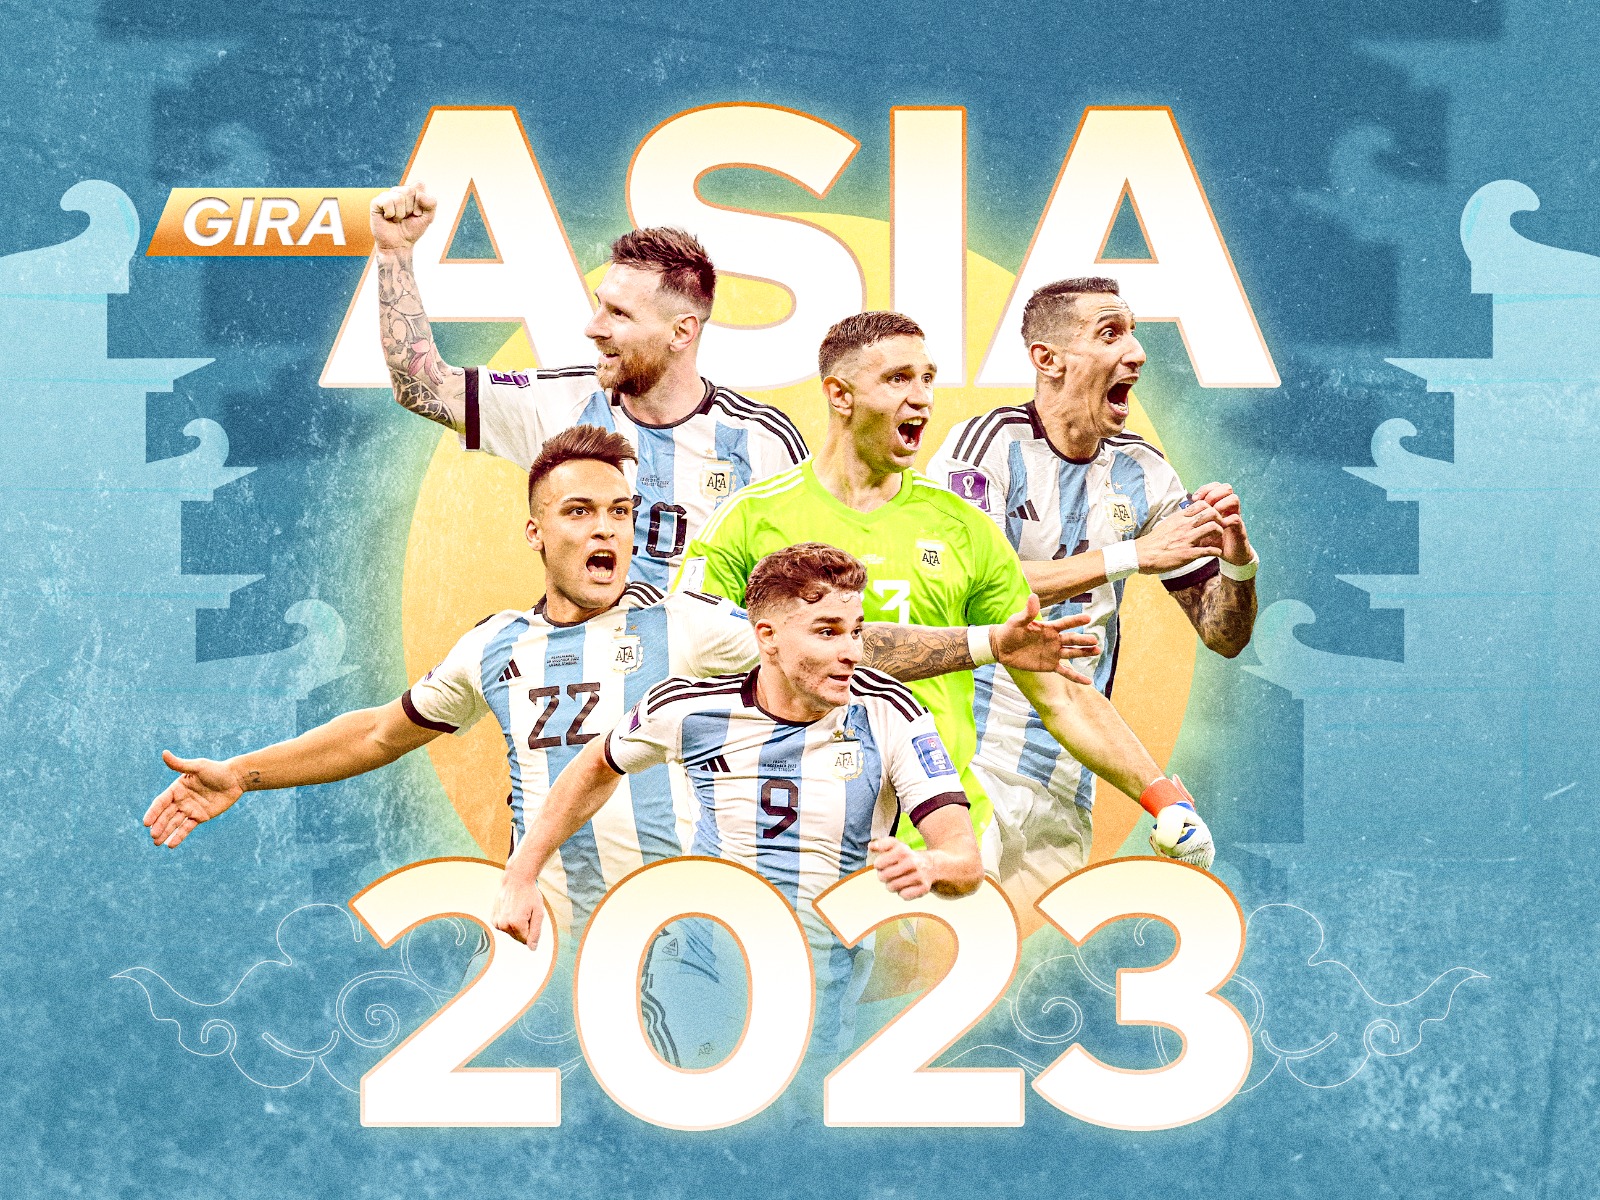 Timnas Argentina Siap Ngandang Di Indonesia, Catat Tanggalnya!